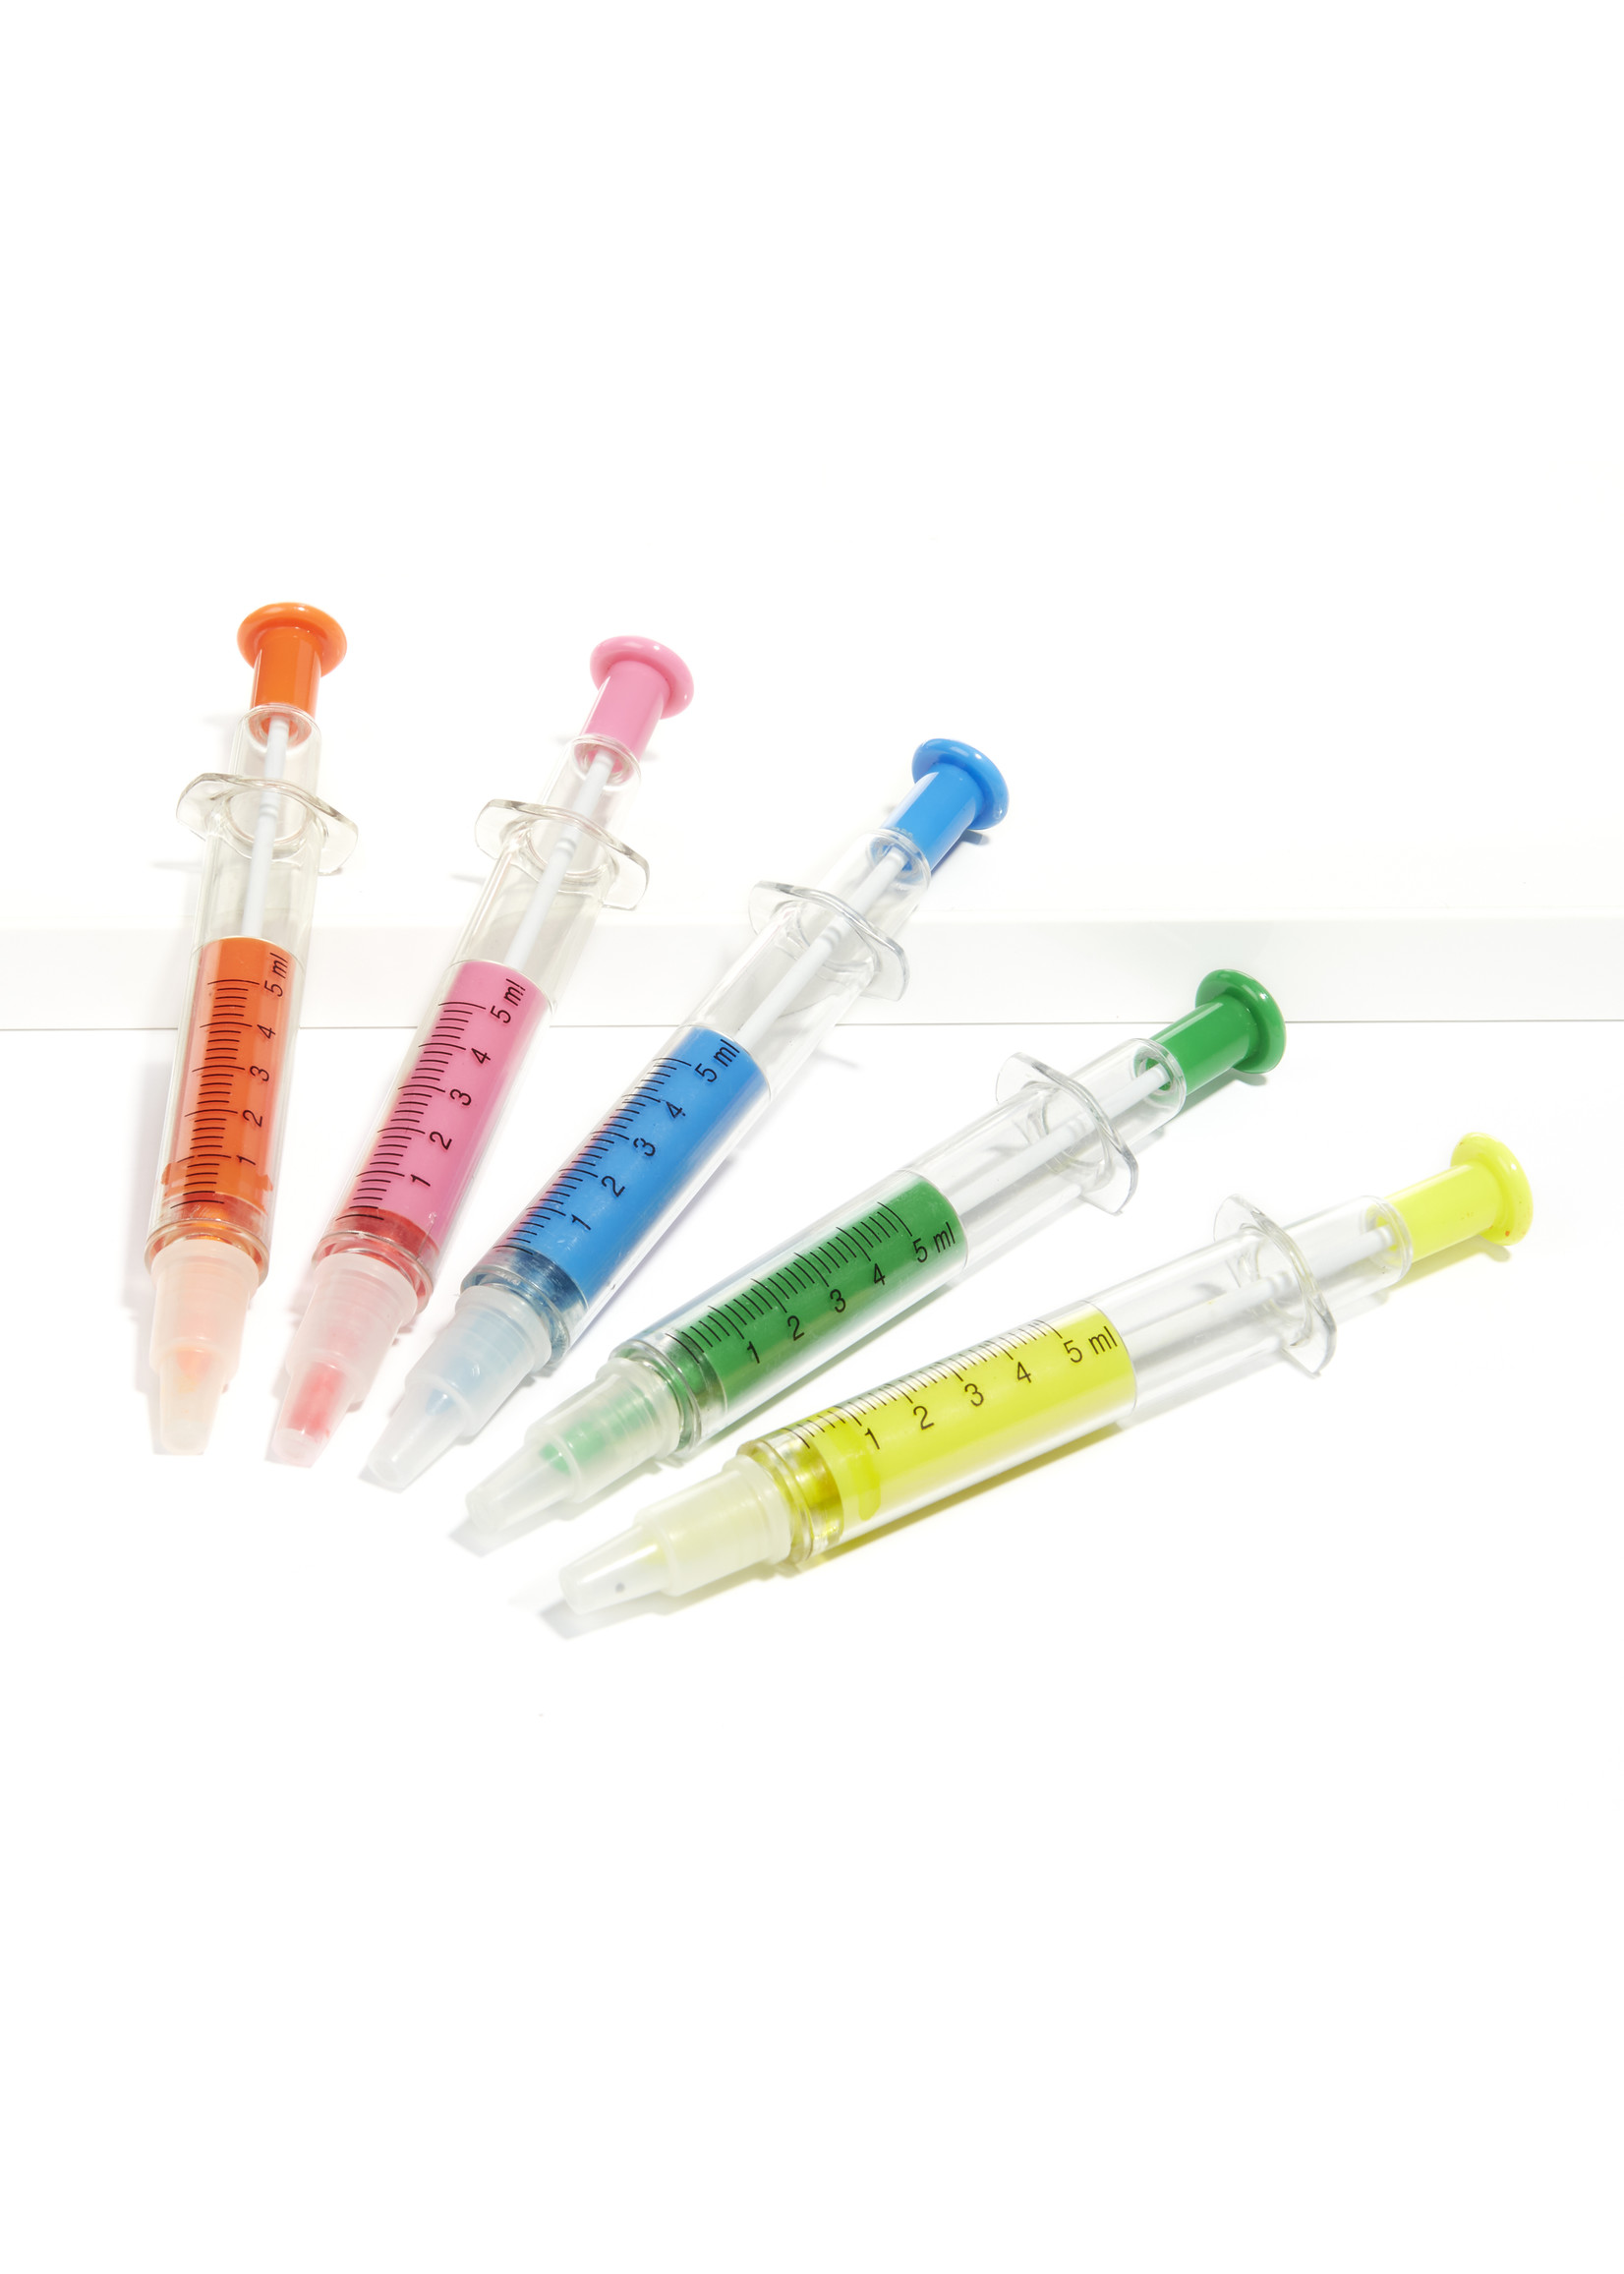 Syringe highlighter